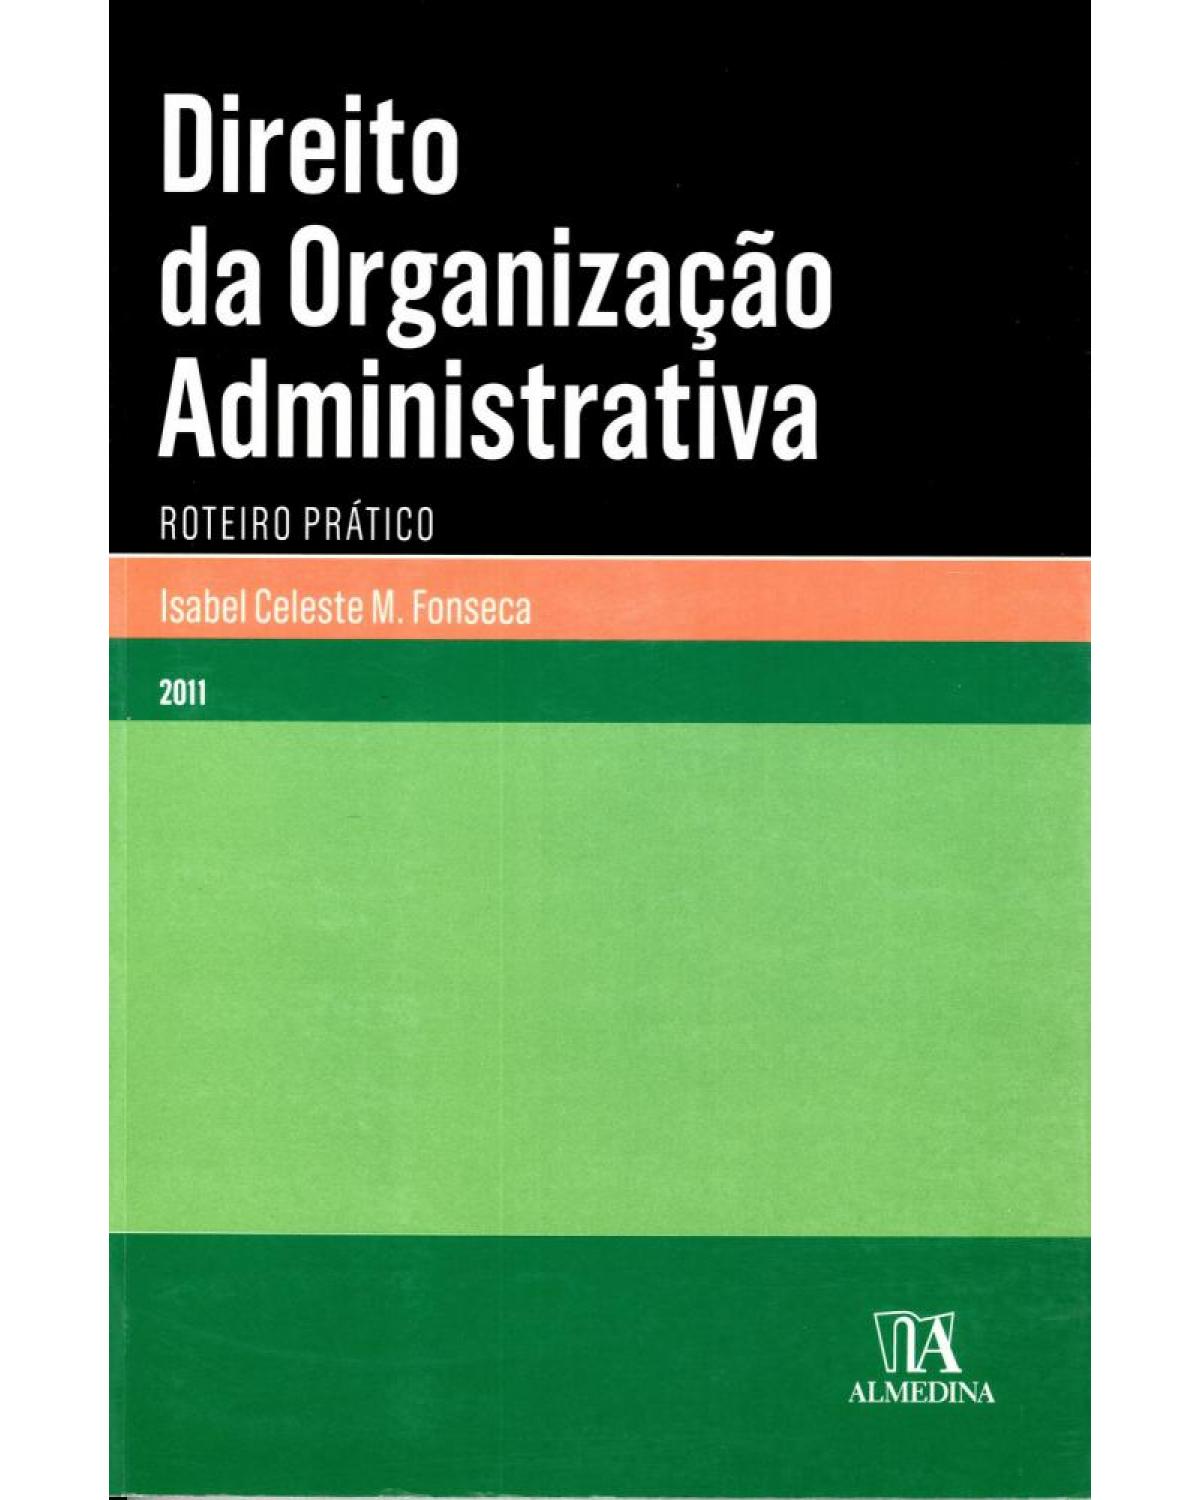 Direito da organização administrativa - roteiro prático - 1ª Edição | 2011